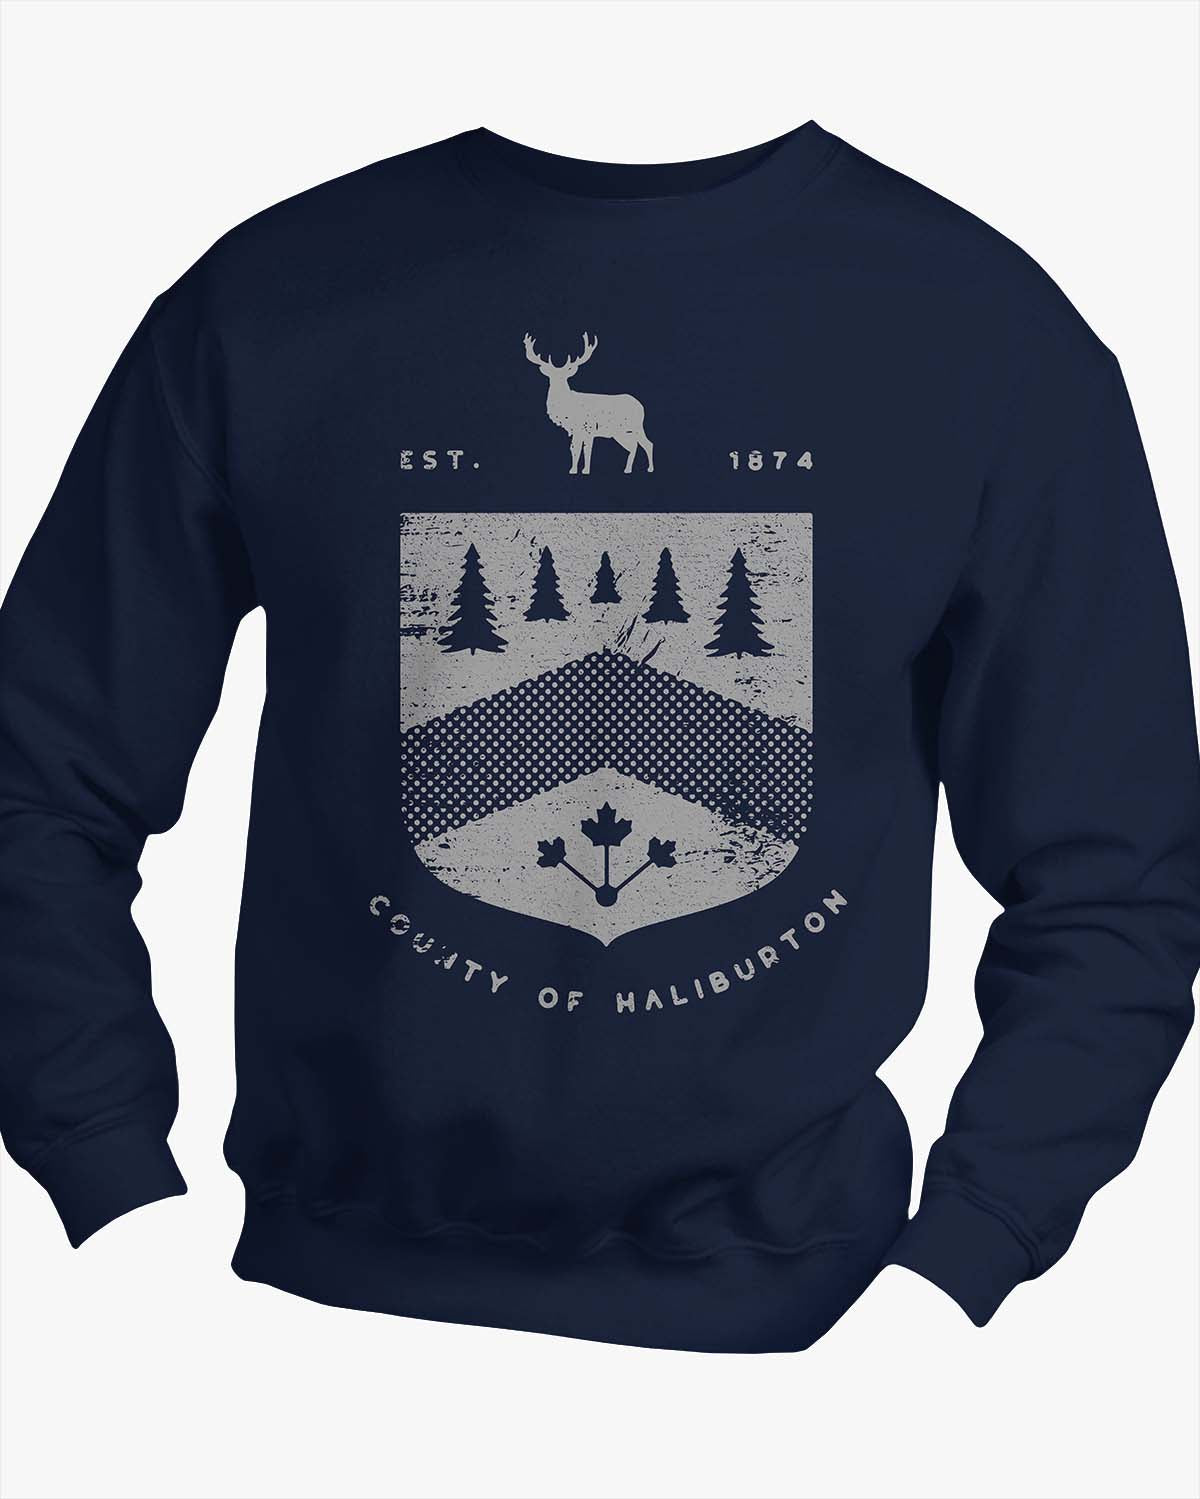 Crest - Haliburton - Sweater